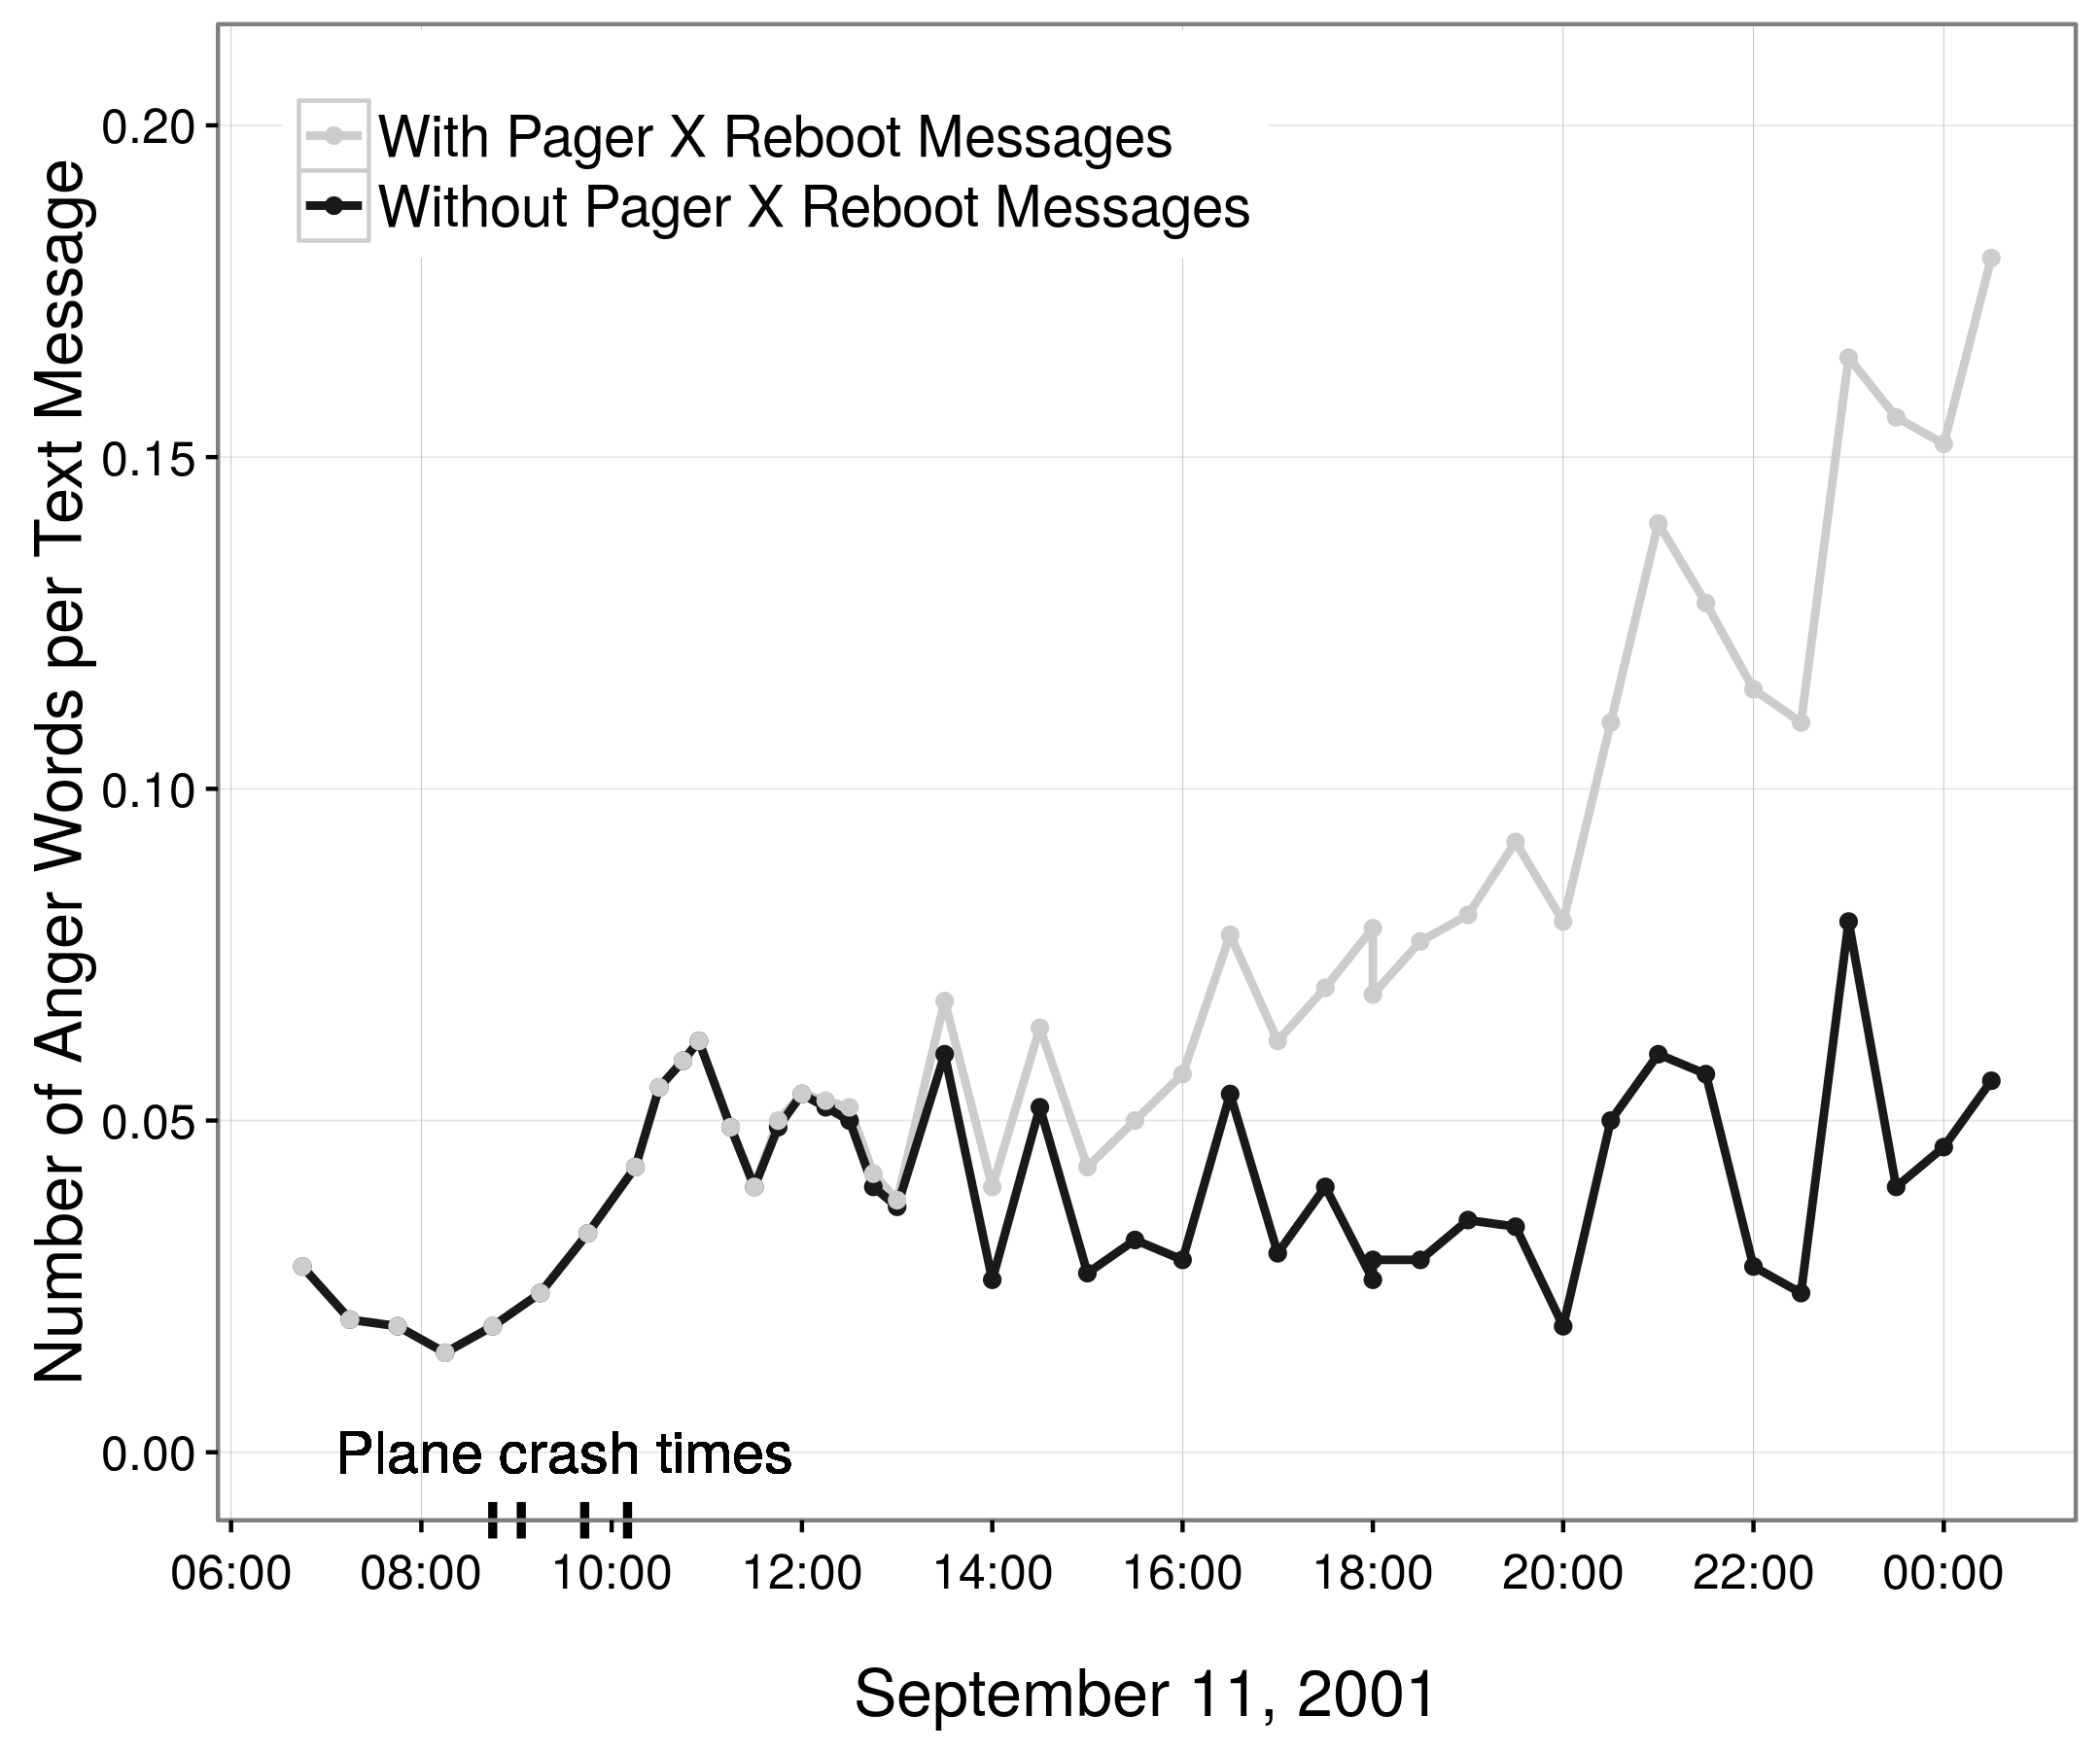 આકૃતિ 2.2: 11 સપ્ટેમ્બર, 2001 ના અભ્યાસક્રમ 85,000 અમેરિકન પેજર પર આધારિત પર ગુસ્સો માં અંદાજિત પ્રવાહો (પાછા, Küfner, અને Egloff 2010; Pury 2011; પાછા, Küfner, અને Egloff 2011). મૂળભૂત રીતે, પાછળ, Küfner, અને Egloff (2010) સમગ્ર દિવસ દરમિયાન ગુસ્સો વધી એક પેટર્ન અહેવાલ. CRITICAL: [તારીખ અને સમય] [સ્થાન] પર કેબિનેટમાં રીબુટ એનટી મશીન [name] ને [Name]: જો કે, આ દેખીતા ક્રોધિત સંદેશાઓ મોટા ભાગના એક પેજર કે વારંવાર નીચેનો સંદેશો બહાર મોકલવામાં દ્વારા પેદા કરવામાં આવ્યા હતા. આ સંદેશ સાથે દૂર, ગુસ્સો માં સ્પષ્ટ વધારો અદૃશ્ય થઈ જાય છે (Pury 2011; પાછા, Küfner, અને Egloff 2011). આ આંકડો Pury (2011) માં ફિગ 1B એક પ્રજનન છે.